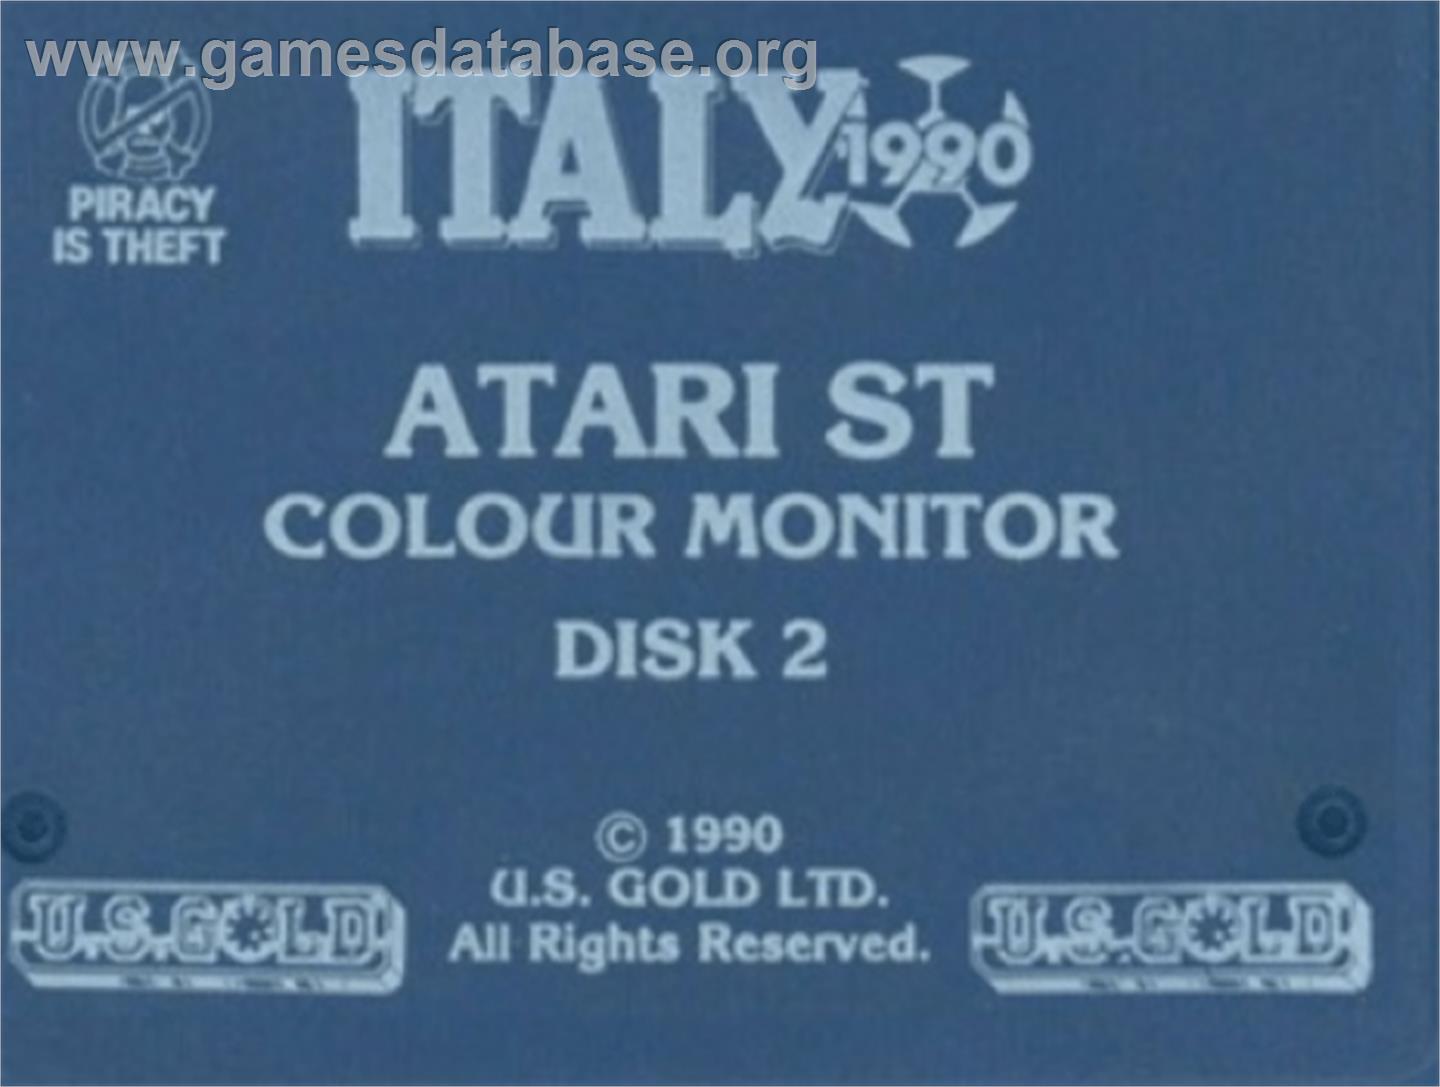 Italia 1990 - Commodore Amiga - Artwork - Cartridge Top